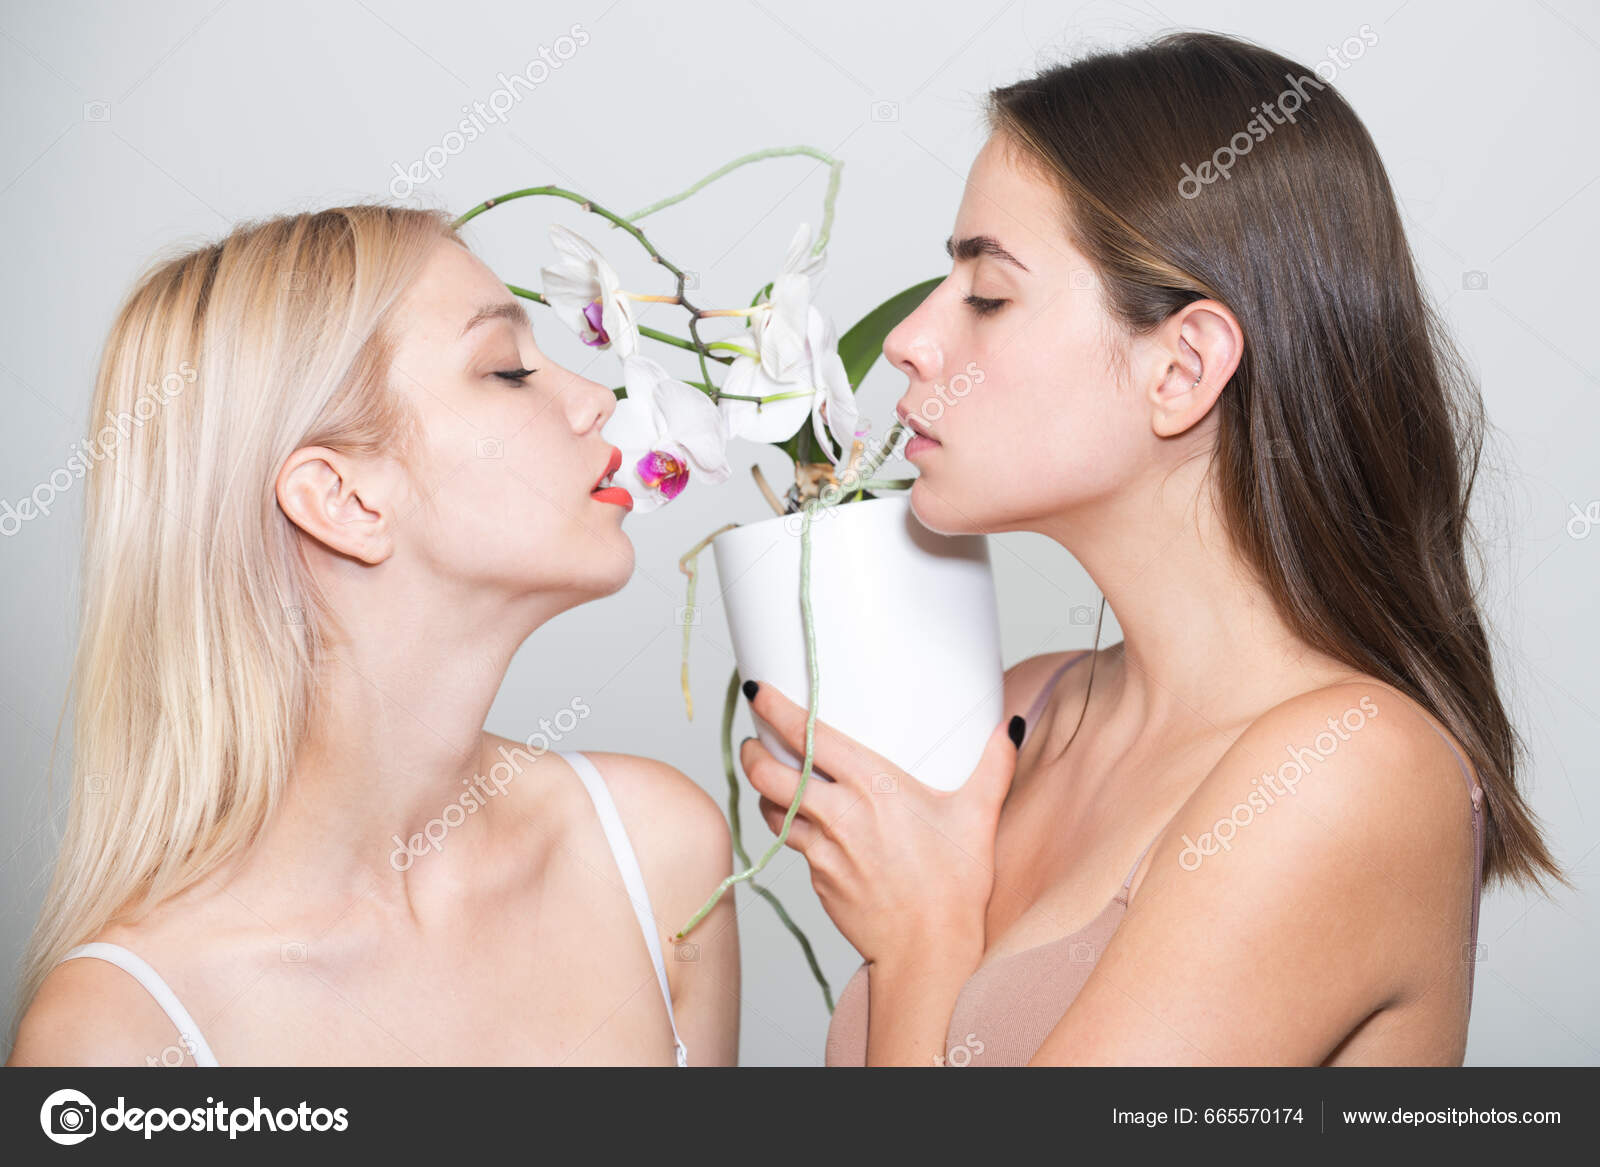 Dos Chicas Sexys Pareja Lesbianas Sensuales Amantes Jóvenes Posando  Sensualidad: fotografía de stock © Tverdohlib.com #665570174 | Depositphotos